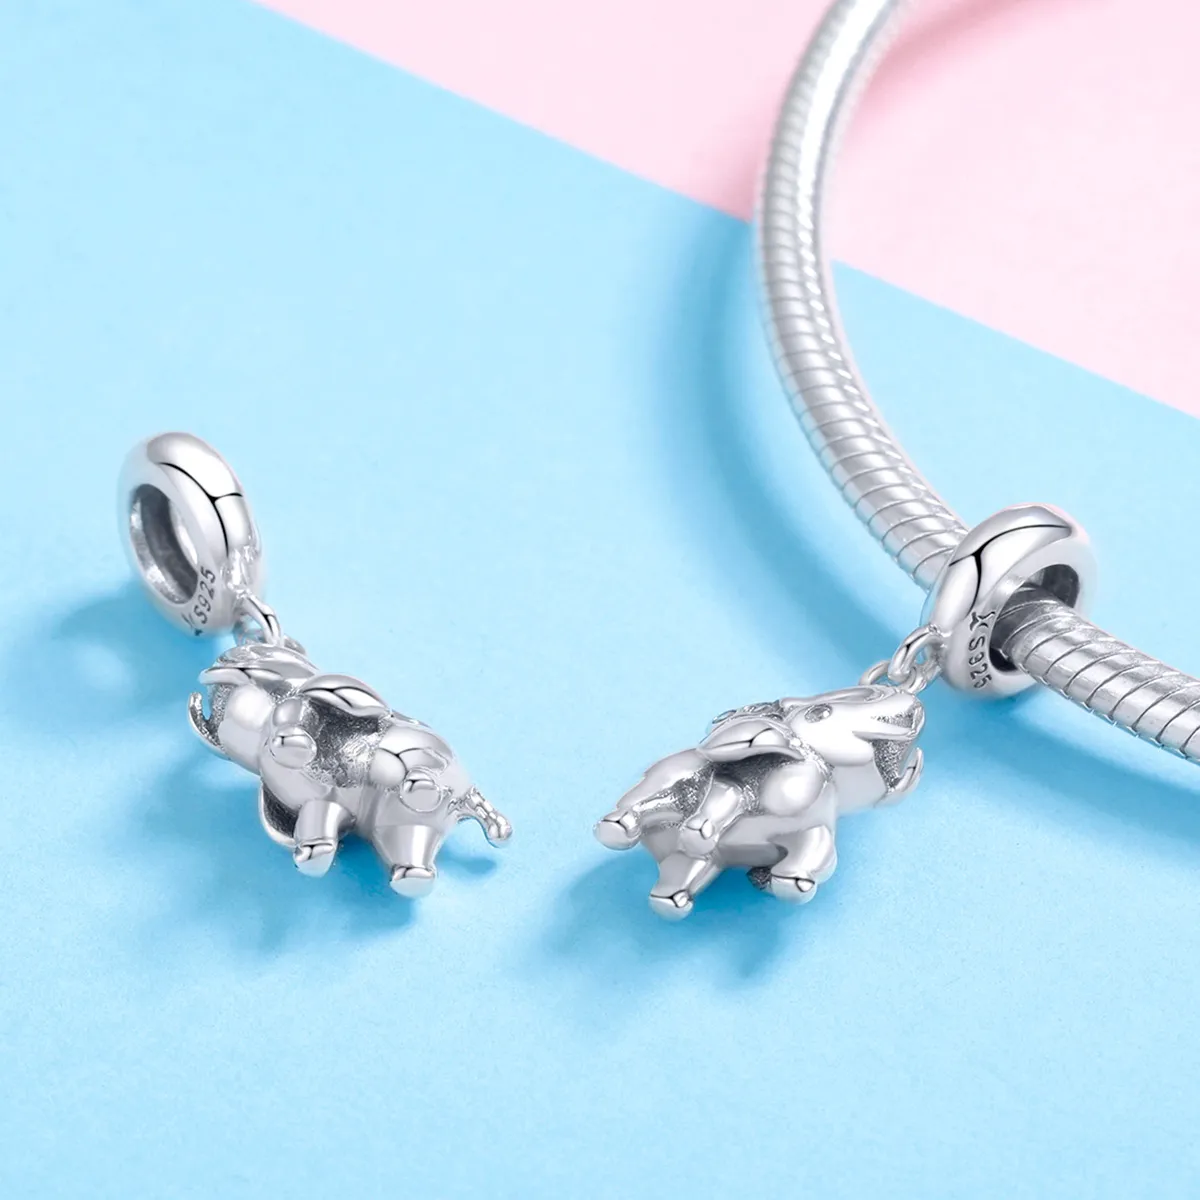 Talisman pandantiv Tip Pandora cu Fericit elefant din argint - SCC1059